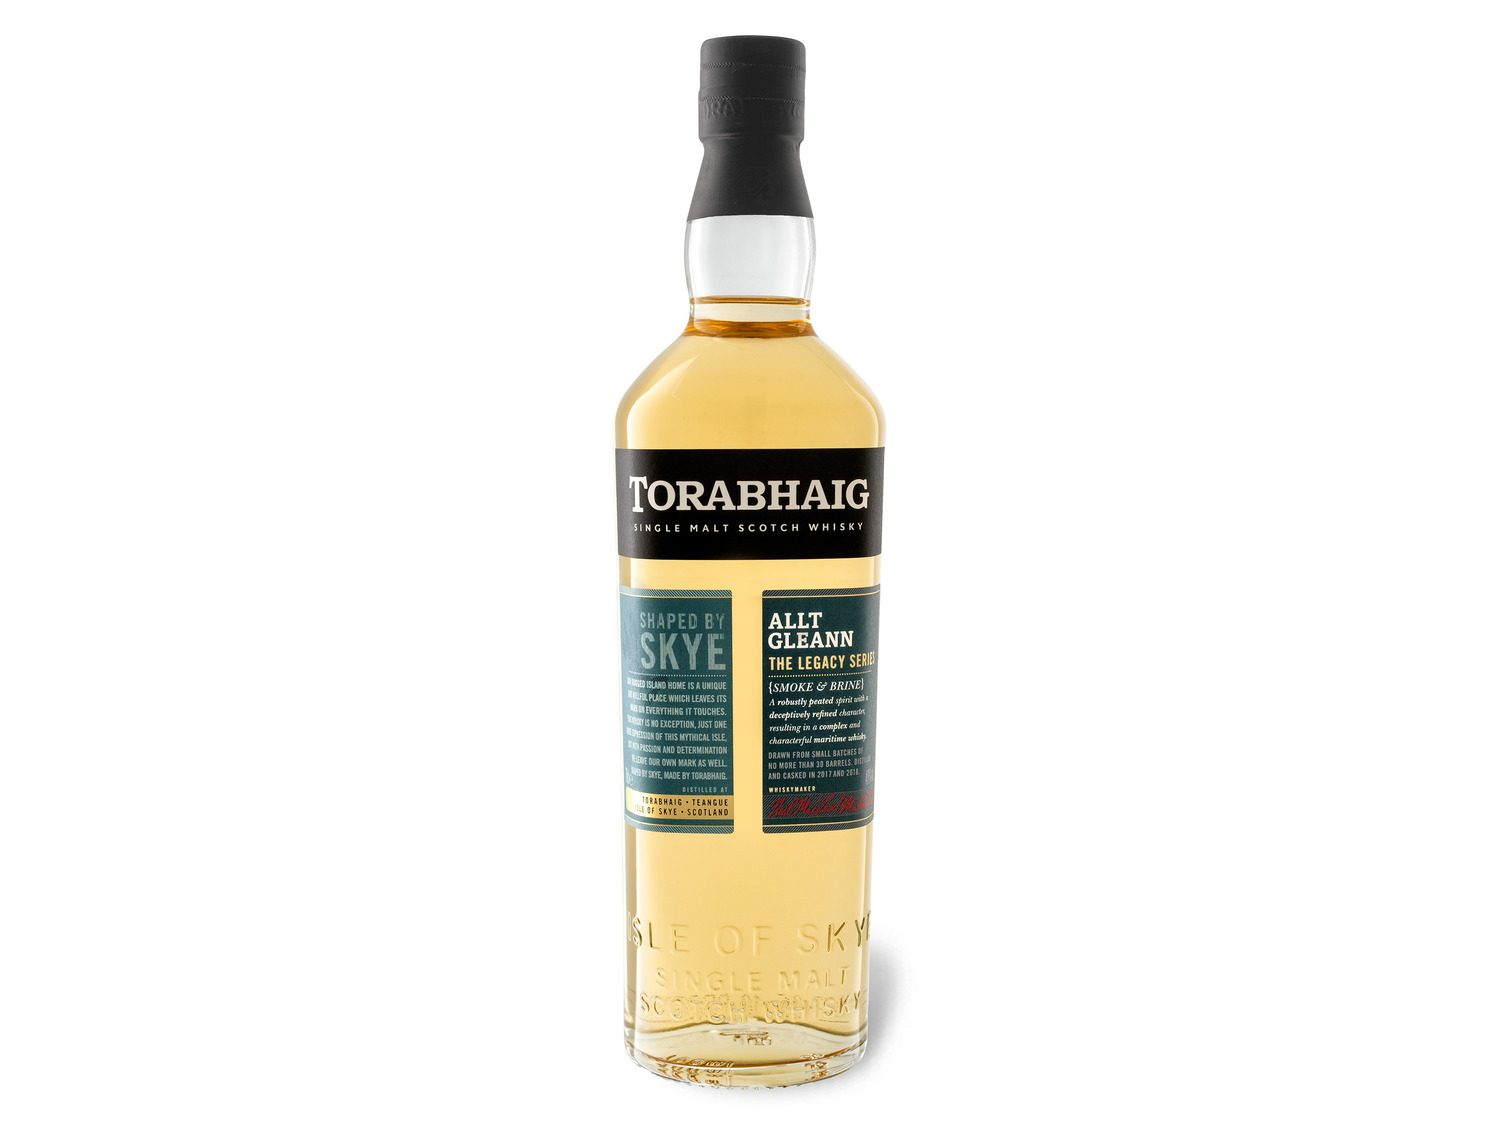 Torabhaig Single Malt Scotch Gleann Le… The Whisky Allt